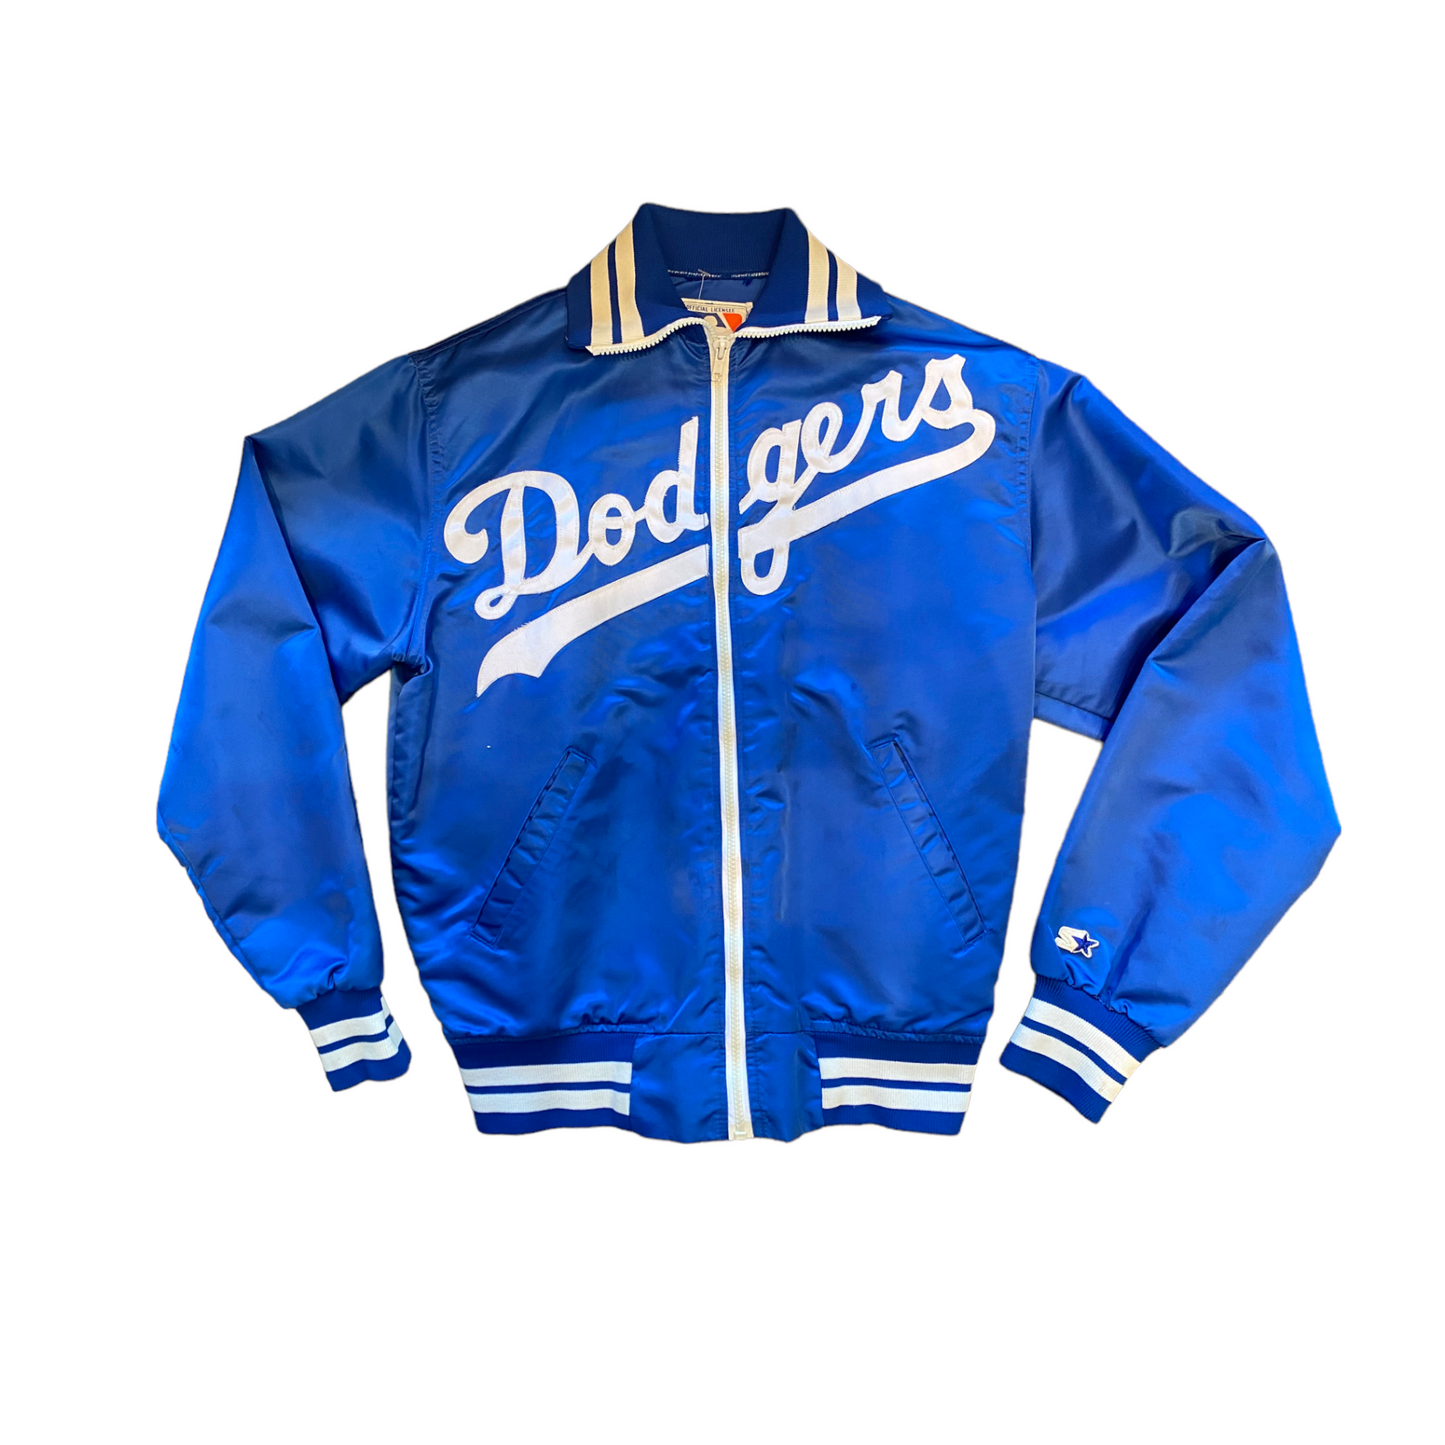 Dodgers 1980s Starter Jacket